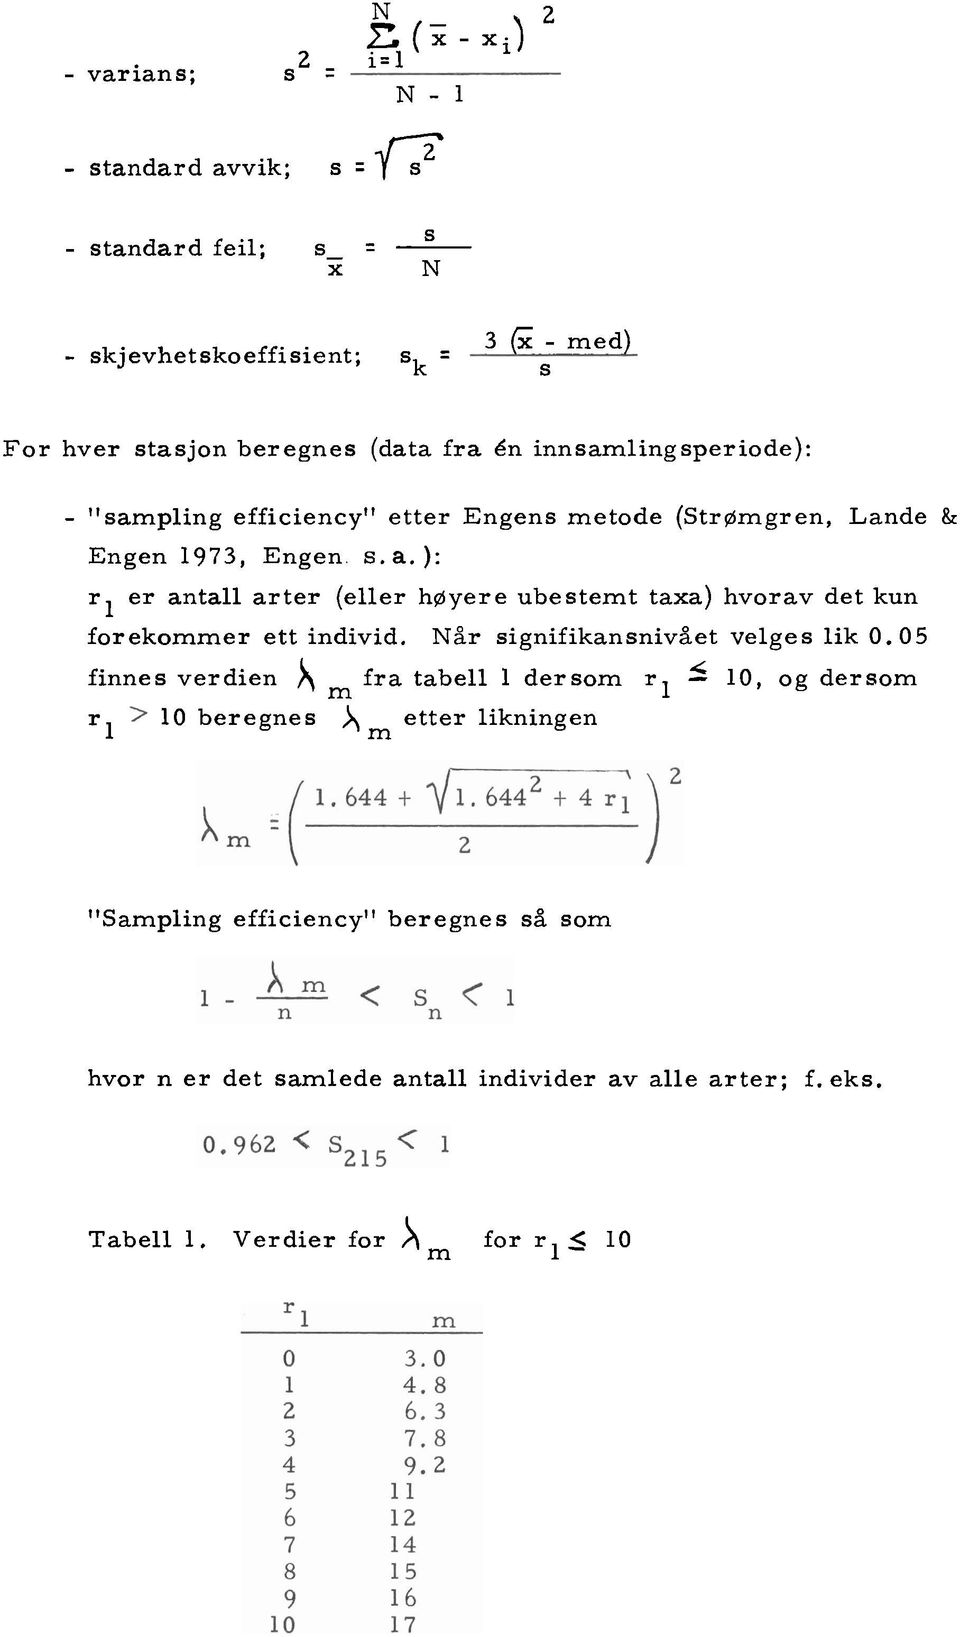 efficiency" etter Engens metode (Strømgren, Lande & Engen 1973, Engen. s.a.): rl er antall arter (eller høyere ubestemt taxa) hvorav det kun forekommer ett individ.